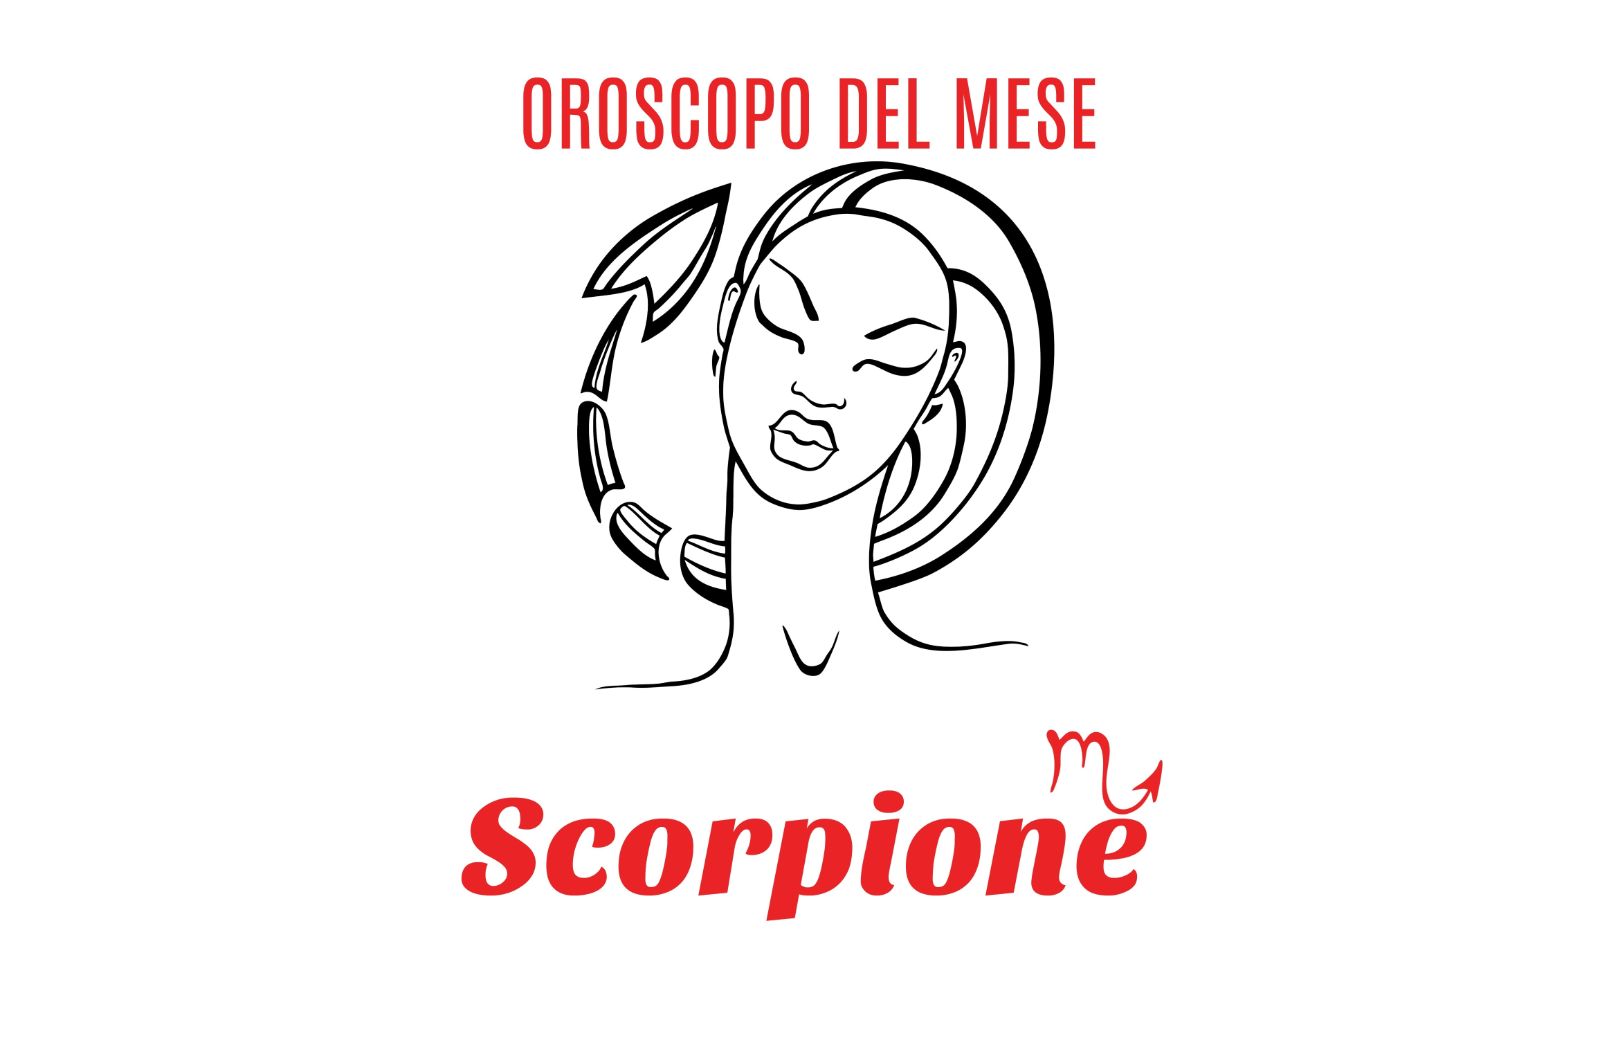 Oroscopo del mese: Scorpione - settembre 2019